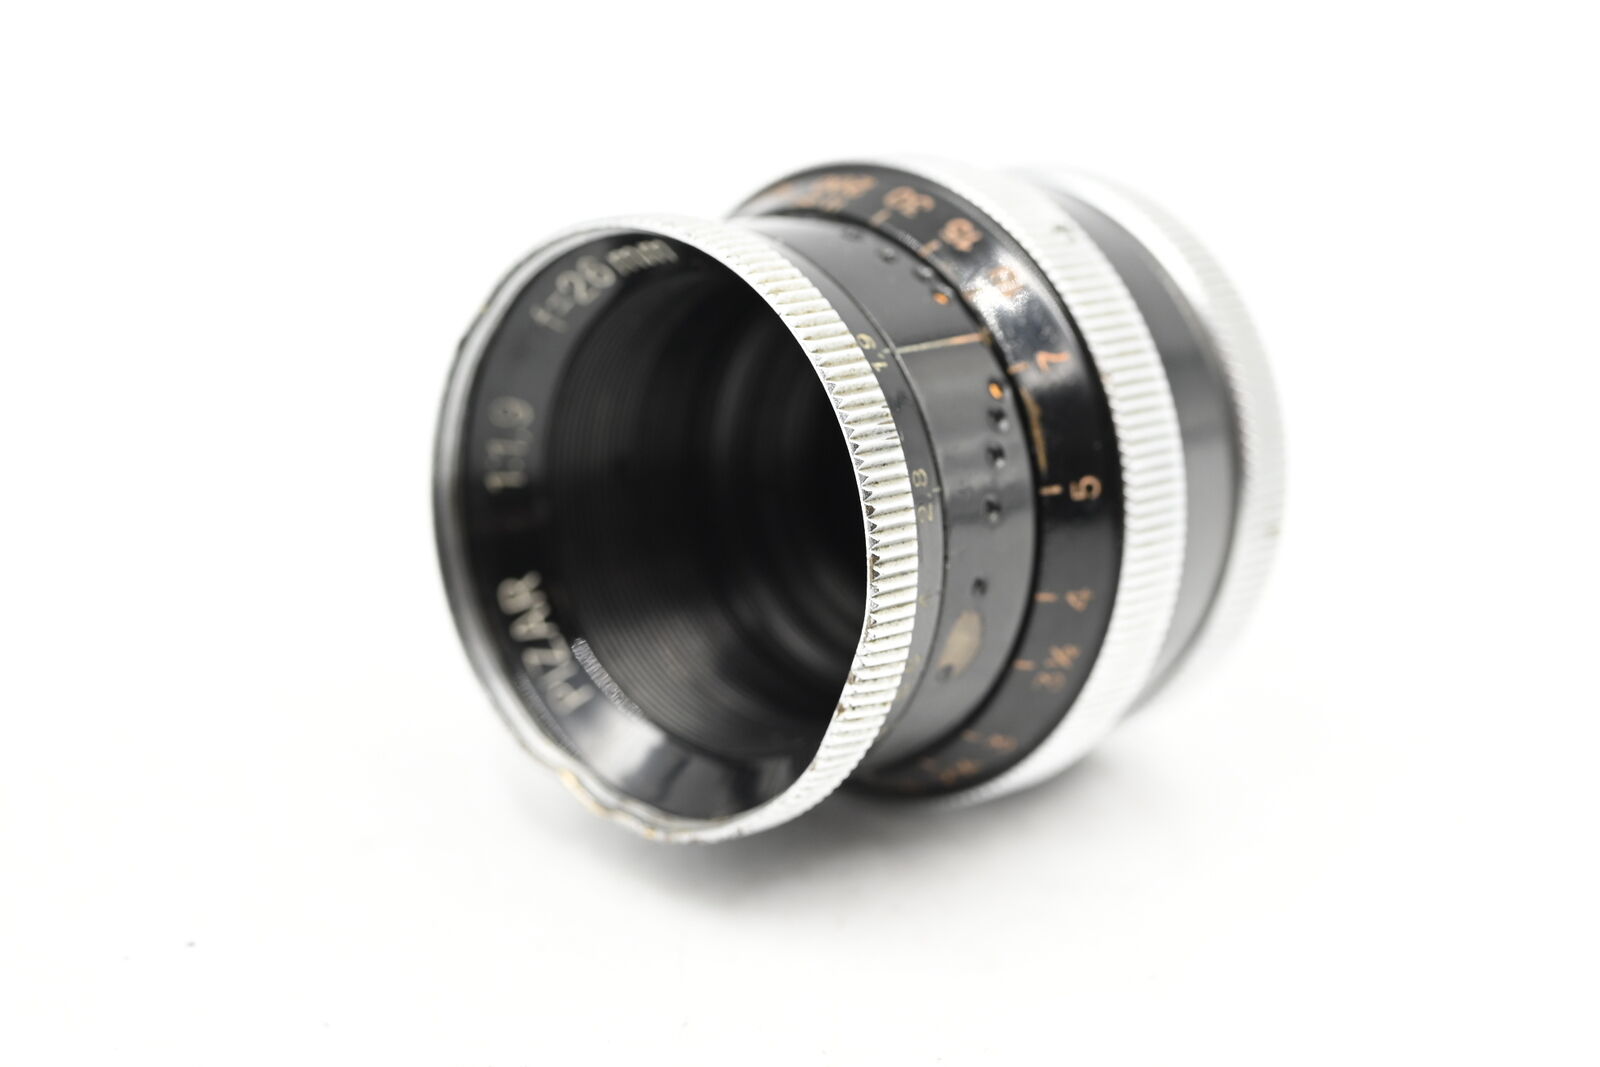 Kern Paillard Pizar 26mm f1.9 H16 AR C Mount Cine Lens Bolex #335